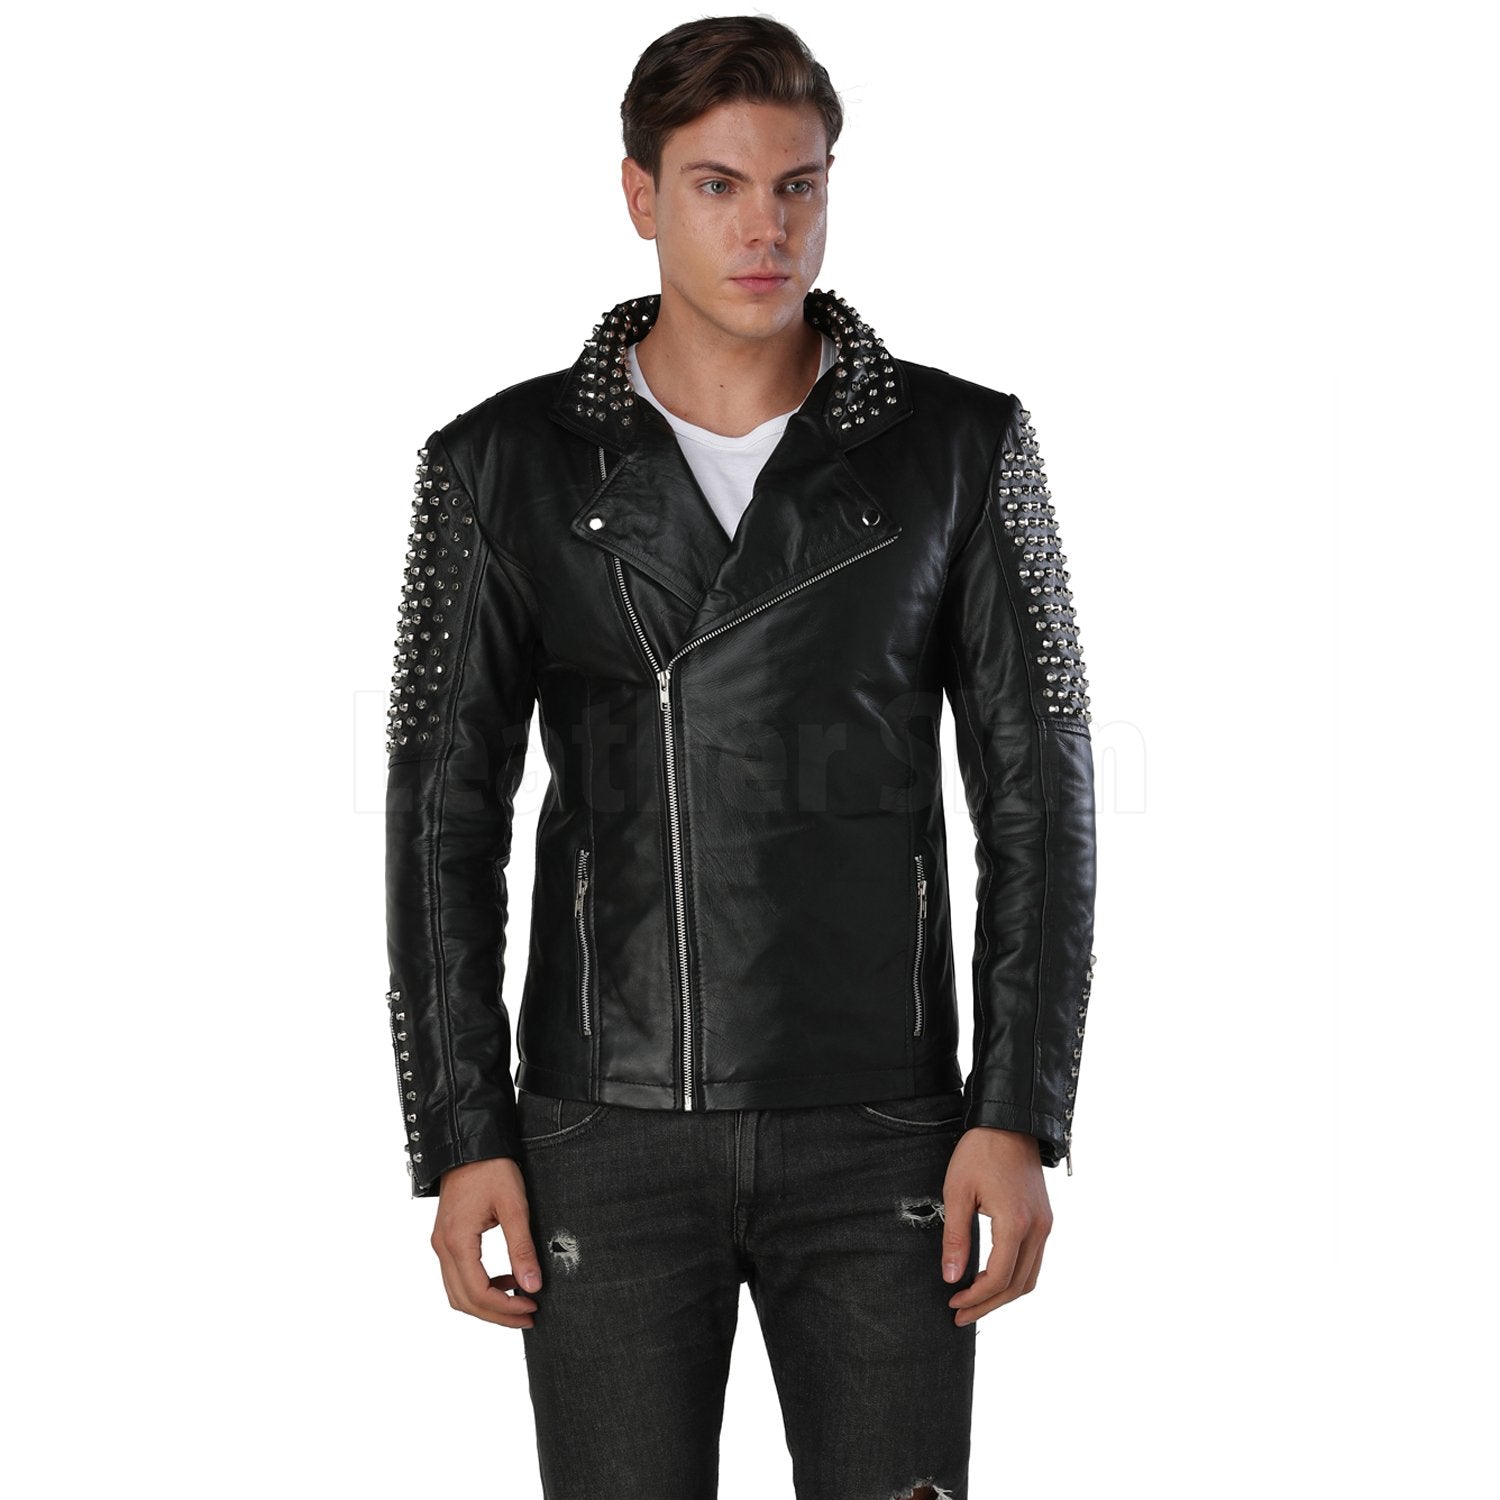 Men's Black Spike Leather Jacket - Leather Skin Shop